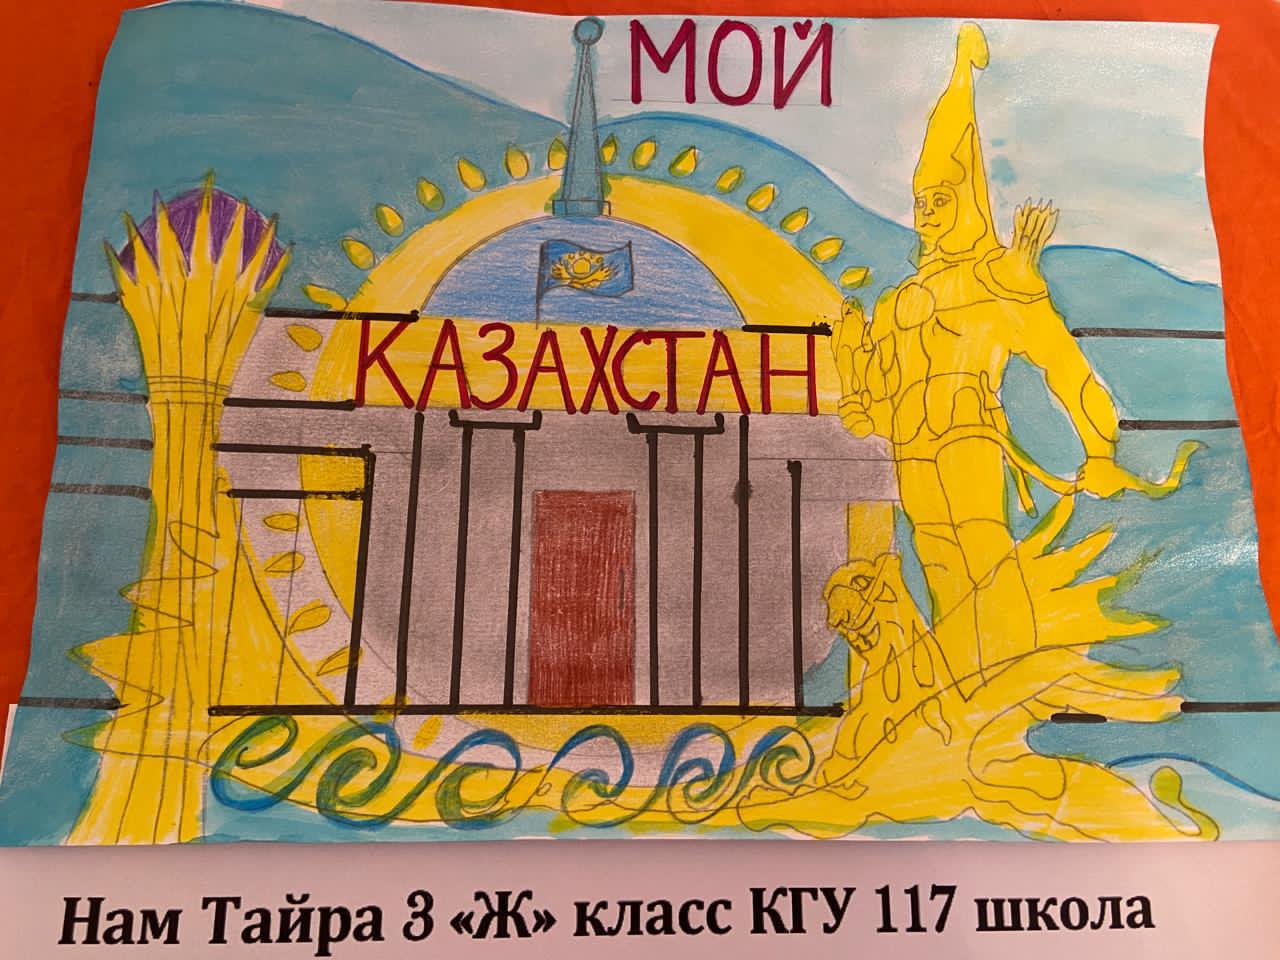 Фотовыставка рисунков на тему:" Мой Казахстан!", мероприятие организовано к 30-летию Независимости РК